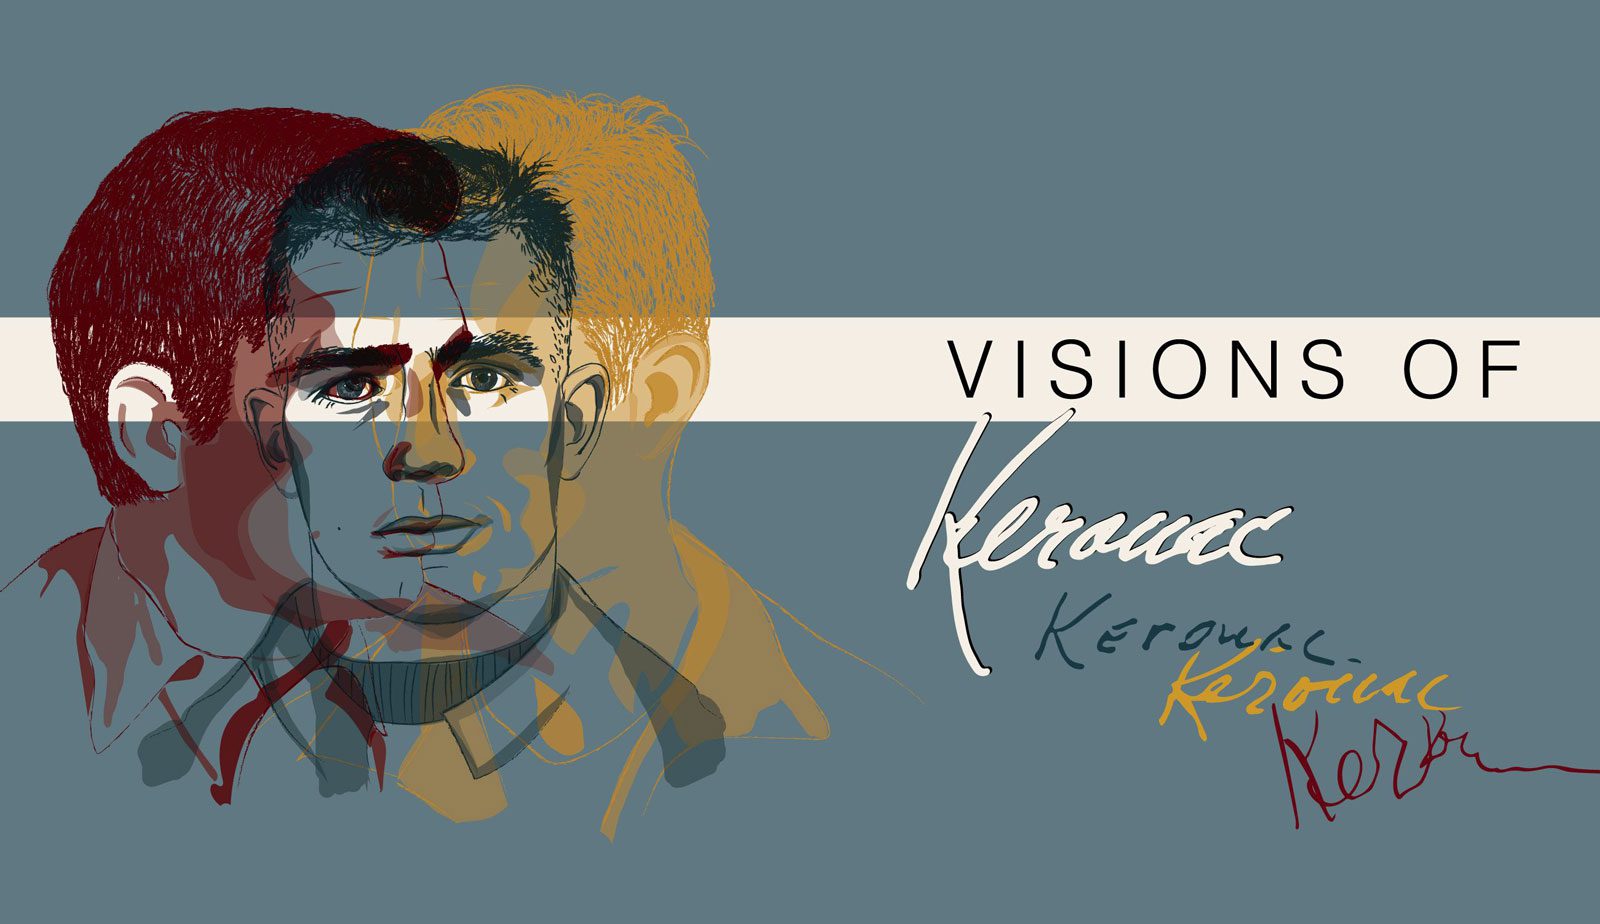 Visions of Kerouac